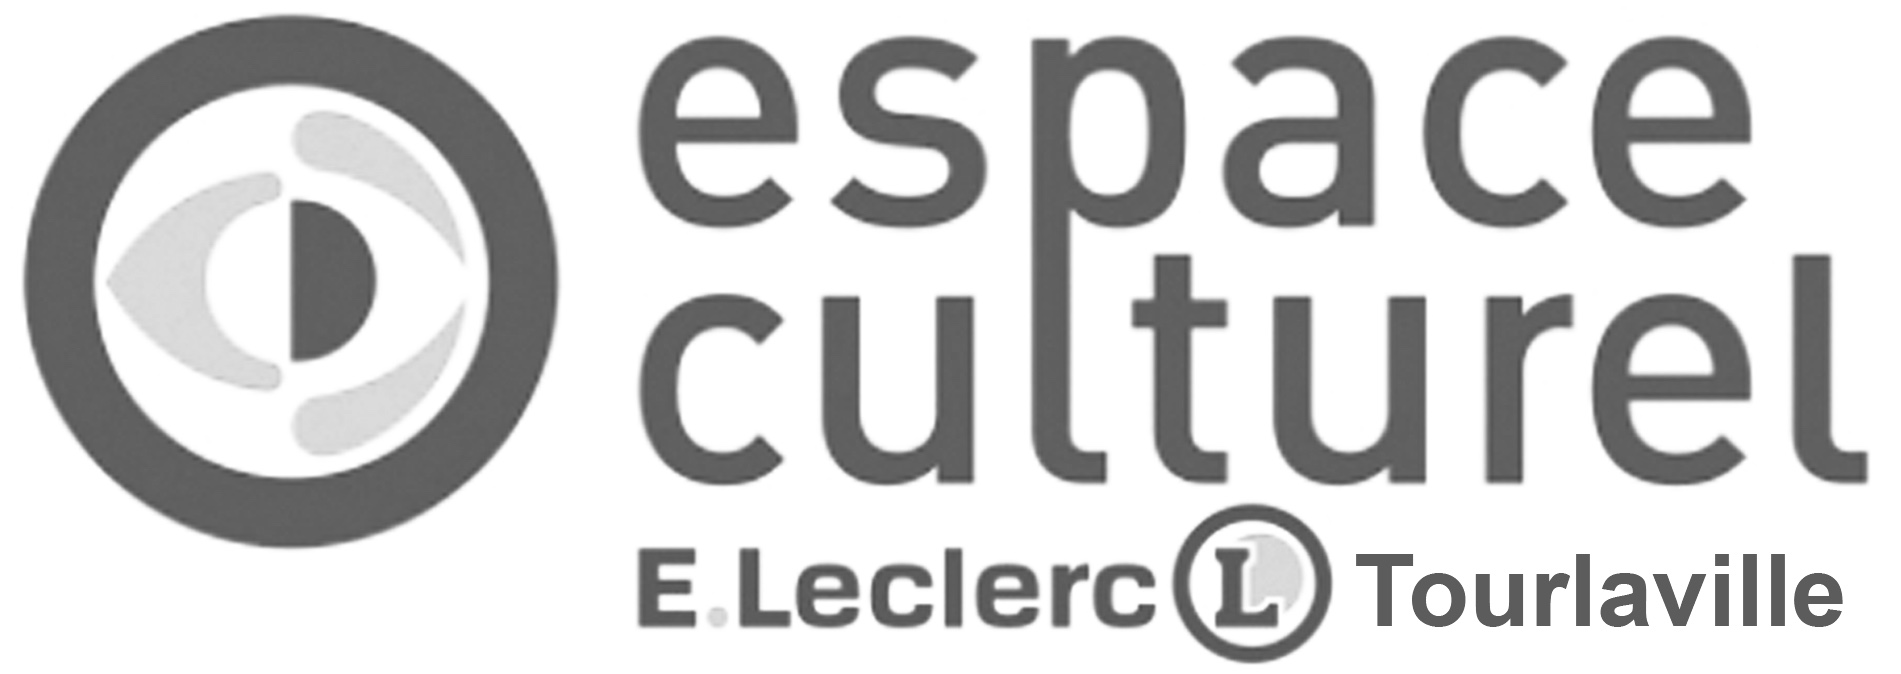 Leclerc Culture Tourlaville